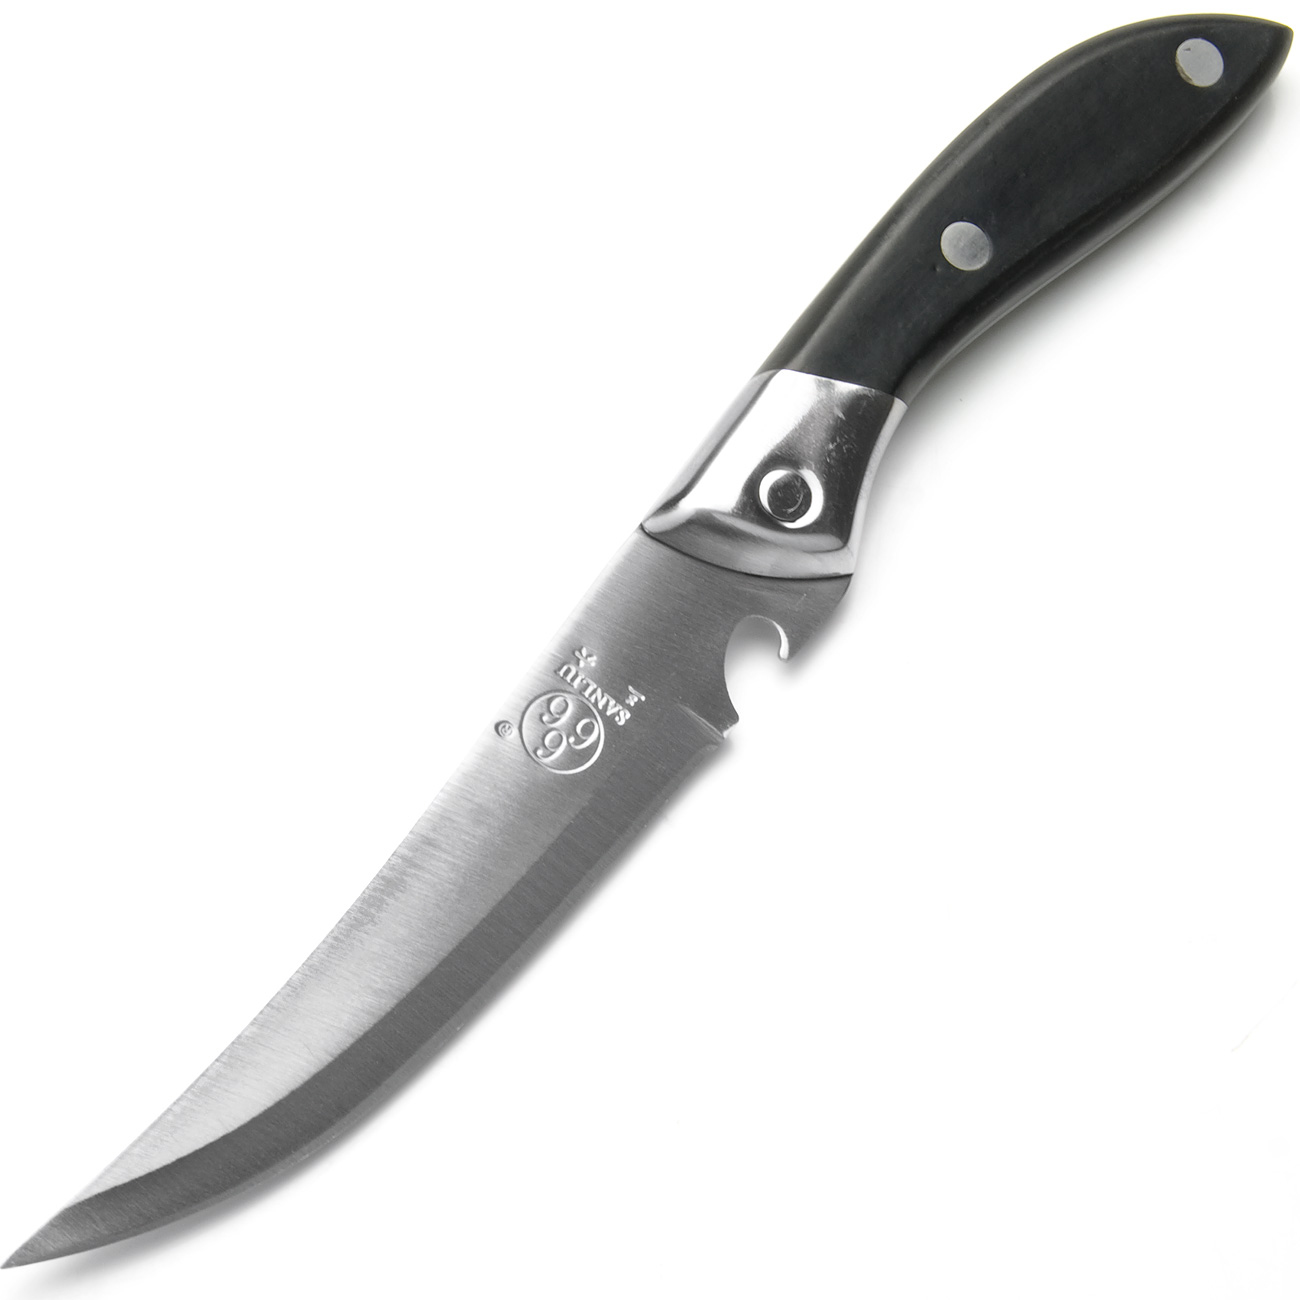 фото Нож универсальный, цвет: серебристый, черный, длина лезвия 13 см Sanliu 666